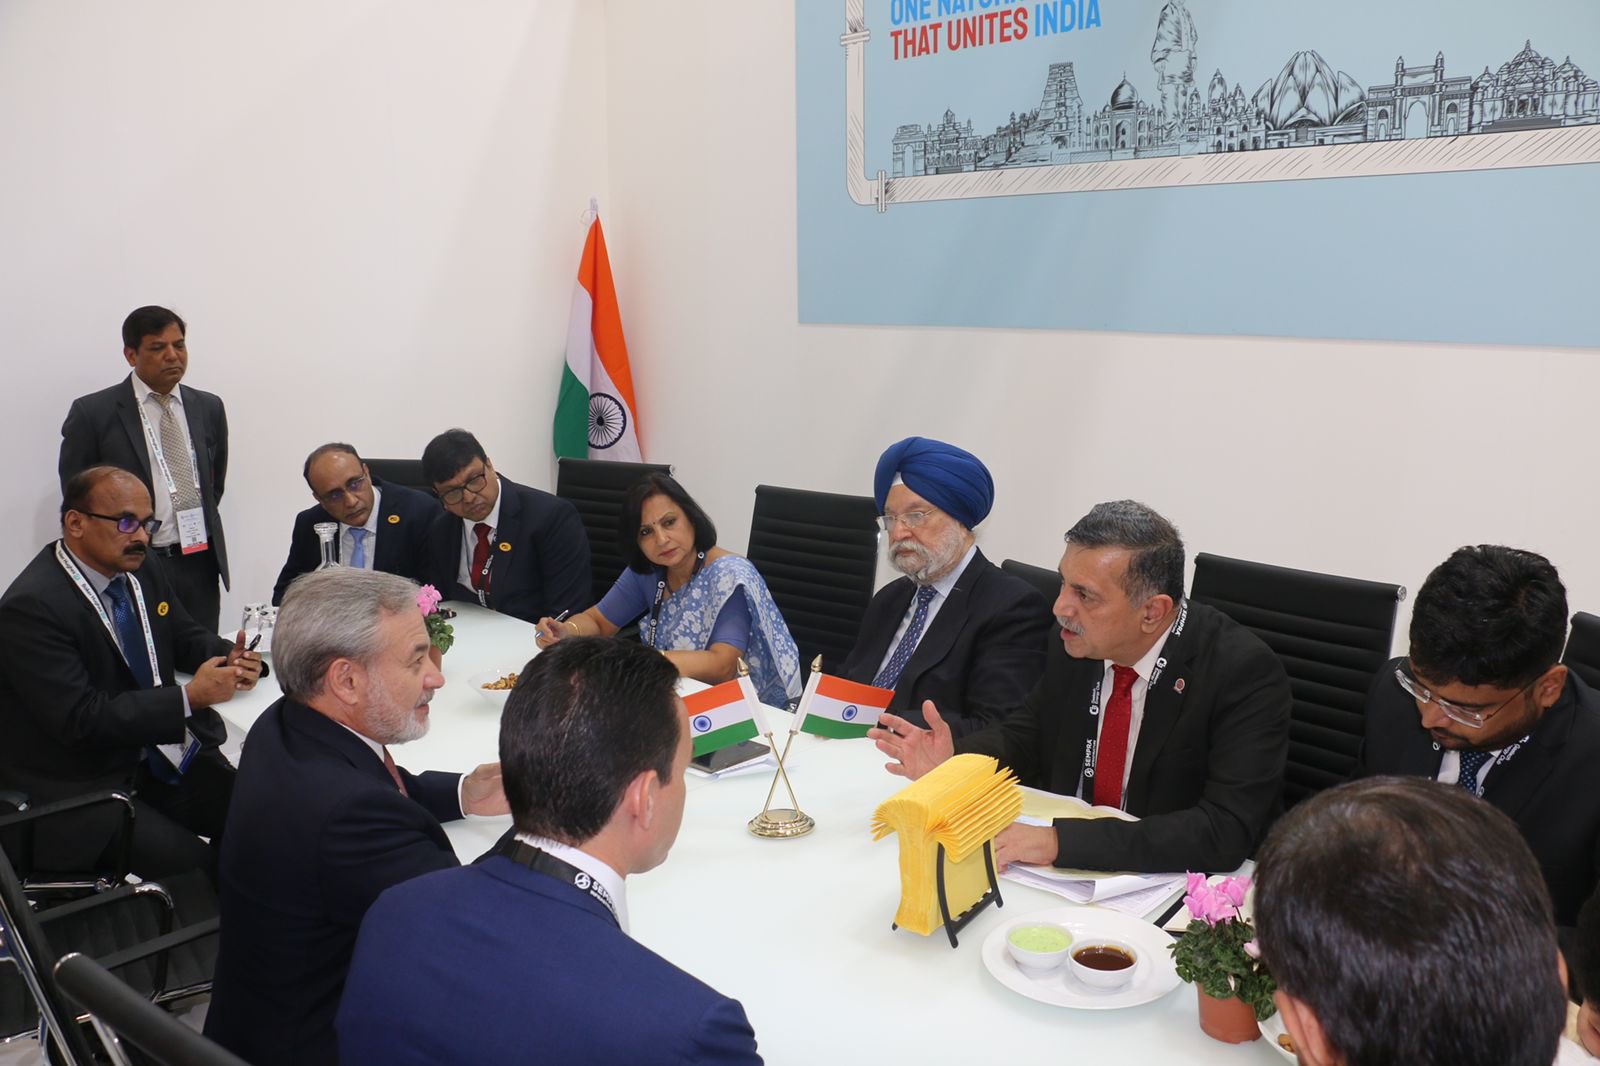 बैठक में पेट्रोलियम और प्राकृतिक गैस मंत्रालय के मंत्री श्री हरदीप सिंह पुरी पीएसयू अधिकारियों के साथ।